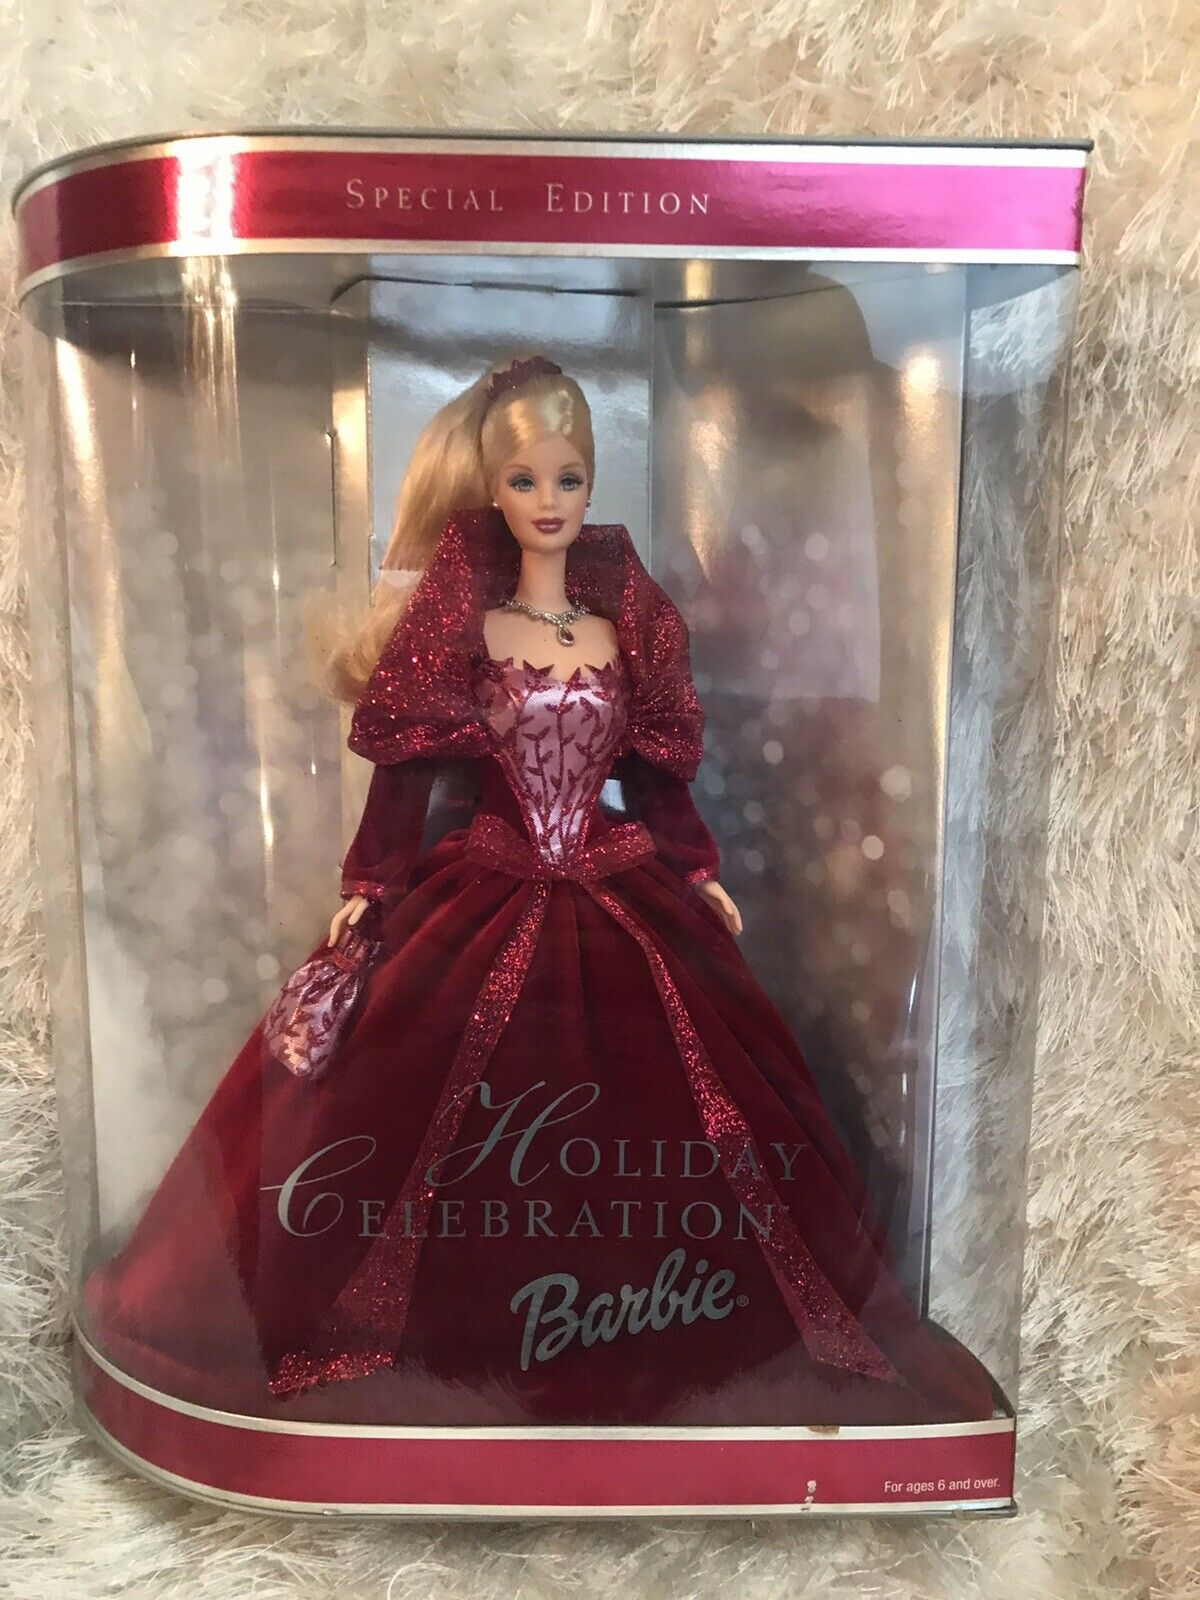 2002 Holiday Celebration Barbie W/ Red Velvet Dress Nrfb Gorgeous Doll